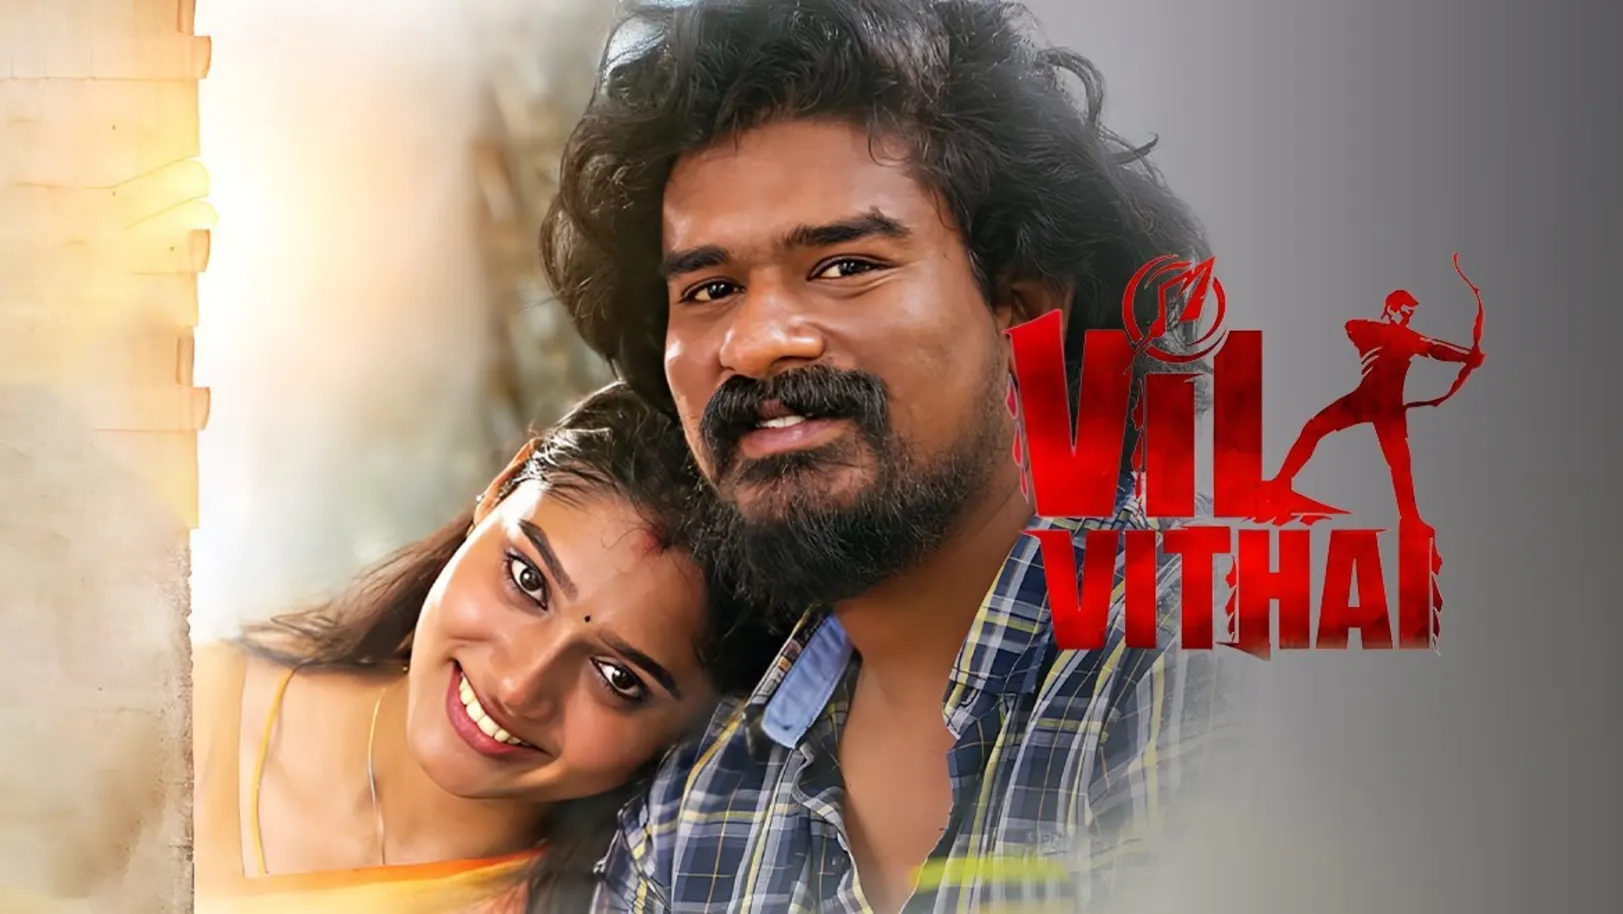 Vil Vithai Movie